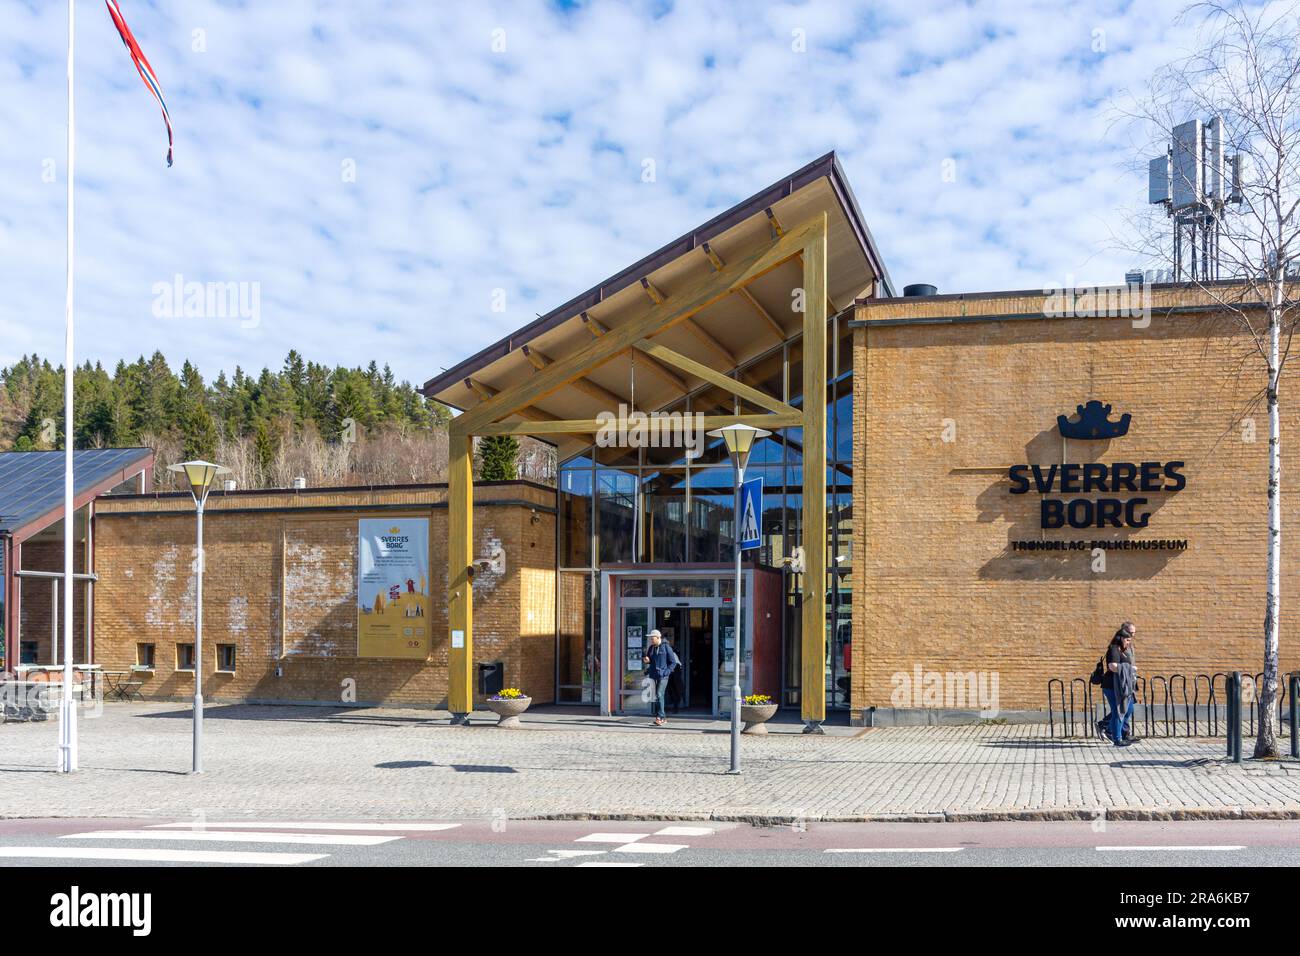 Entrance to Sverresborg Trøndelag Folk Museum, Sverresborg Alle, Trondheim, Trøndelag County, Norway Stock Photo